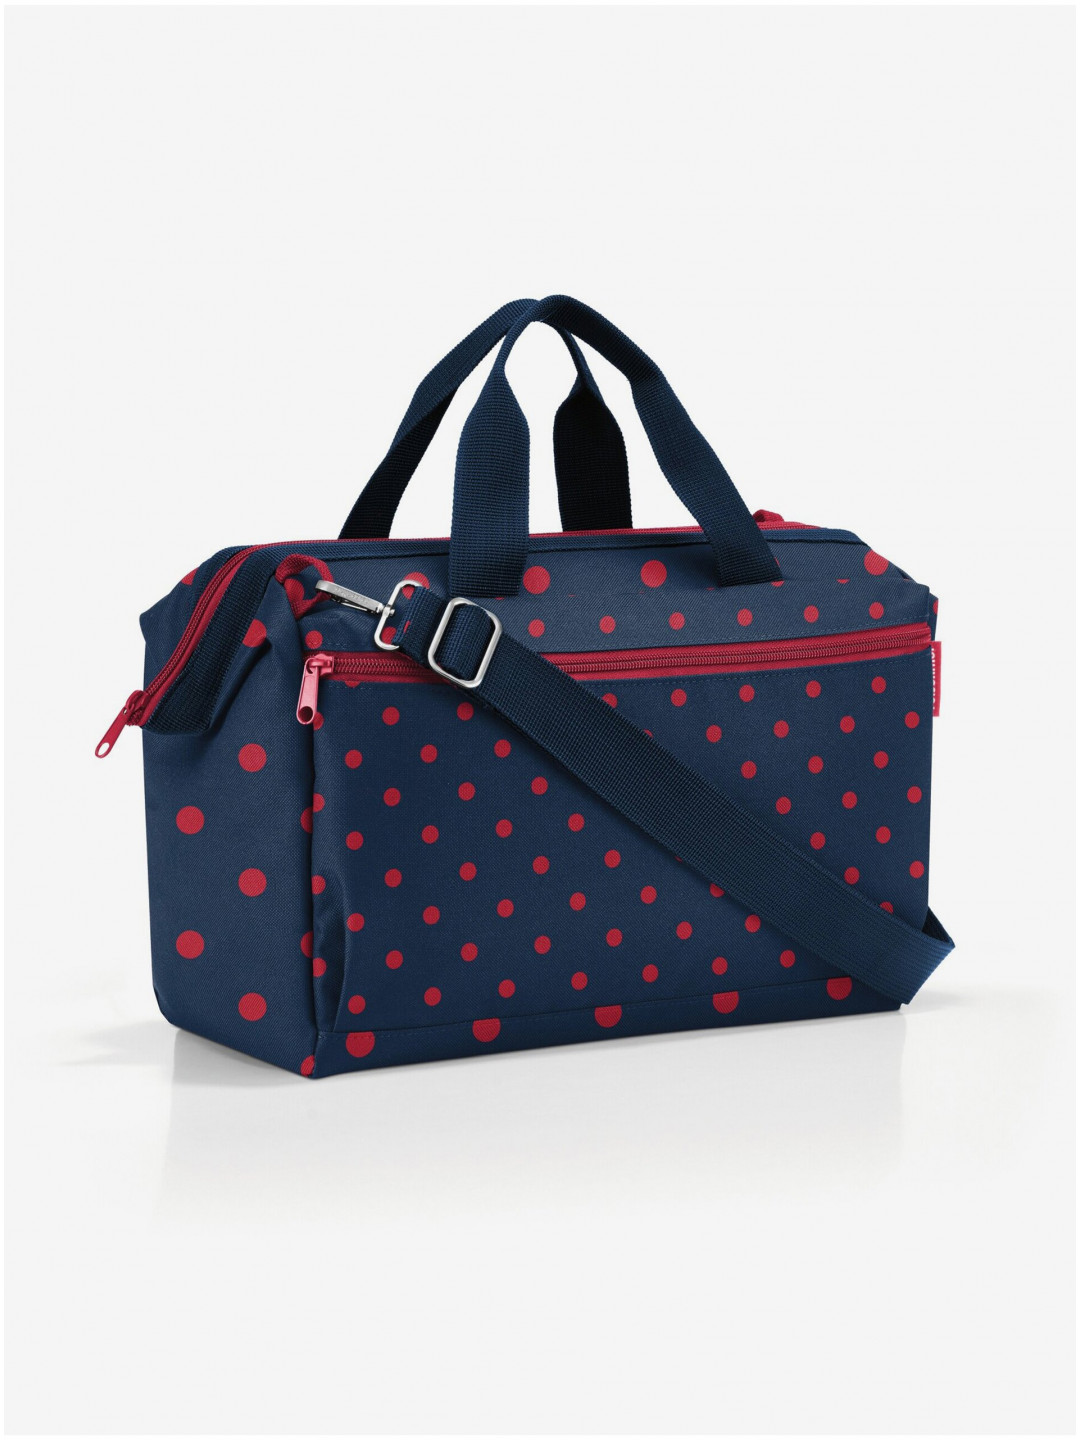 Tmavě modrá puntíkovaná cestovní taška Reisenthel Allrounder S Pocket Mixed Dots Red